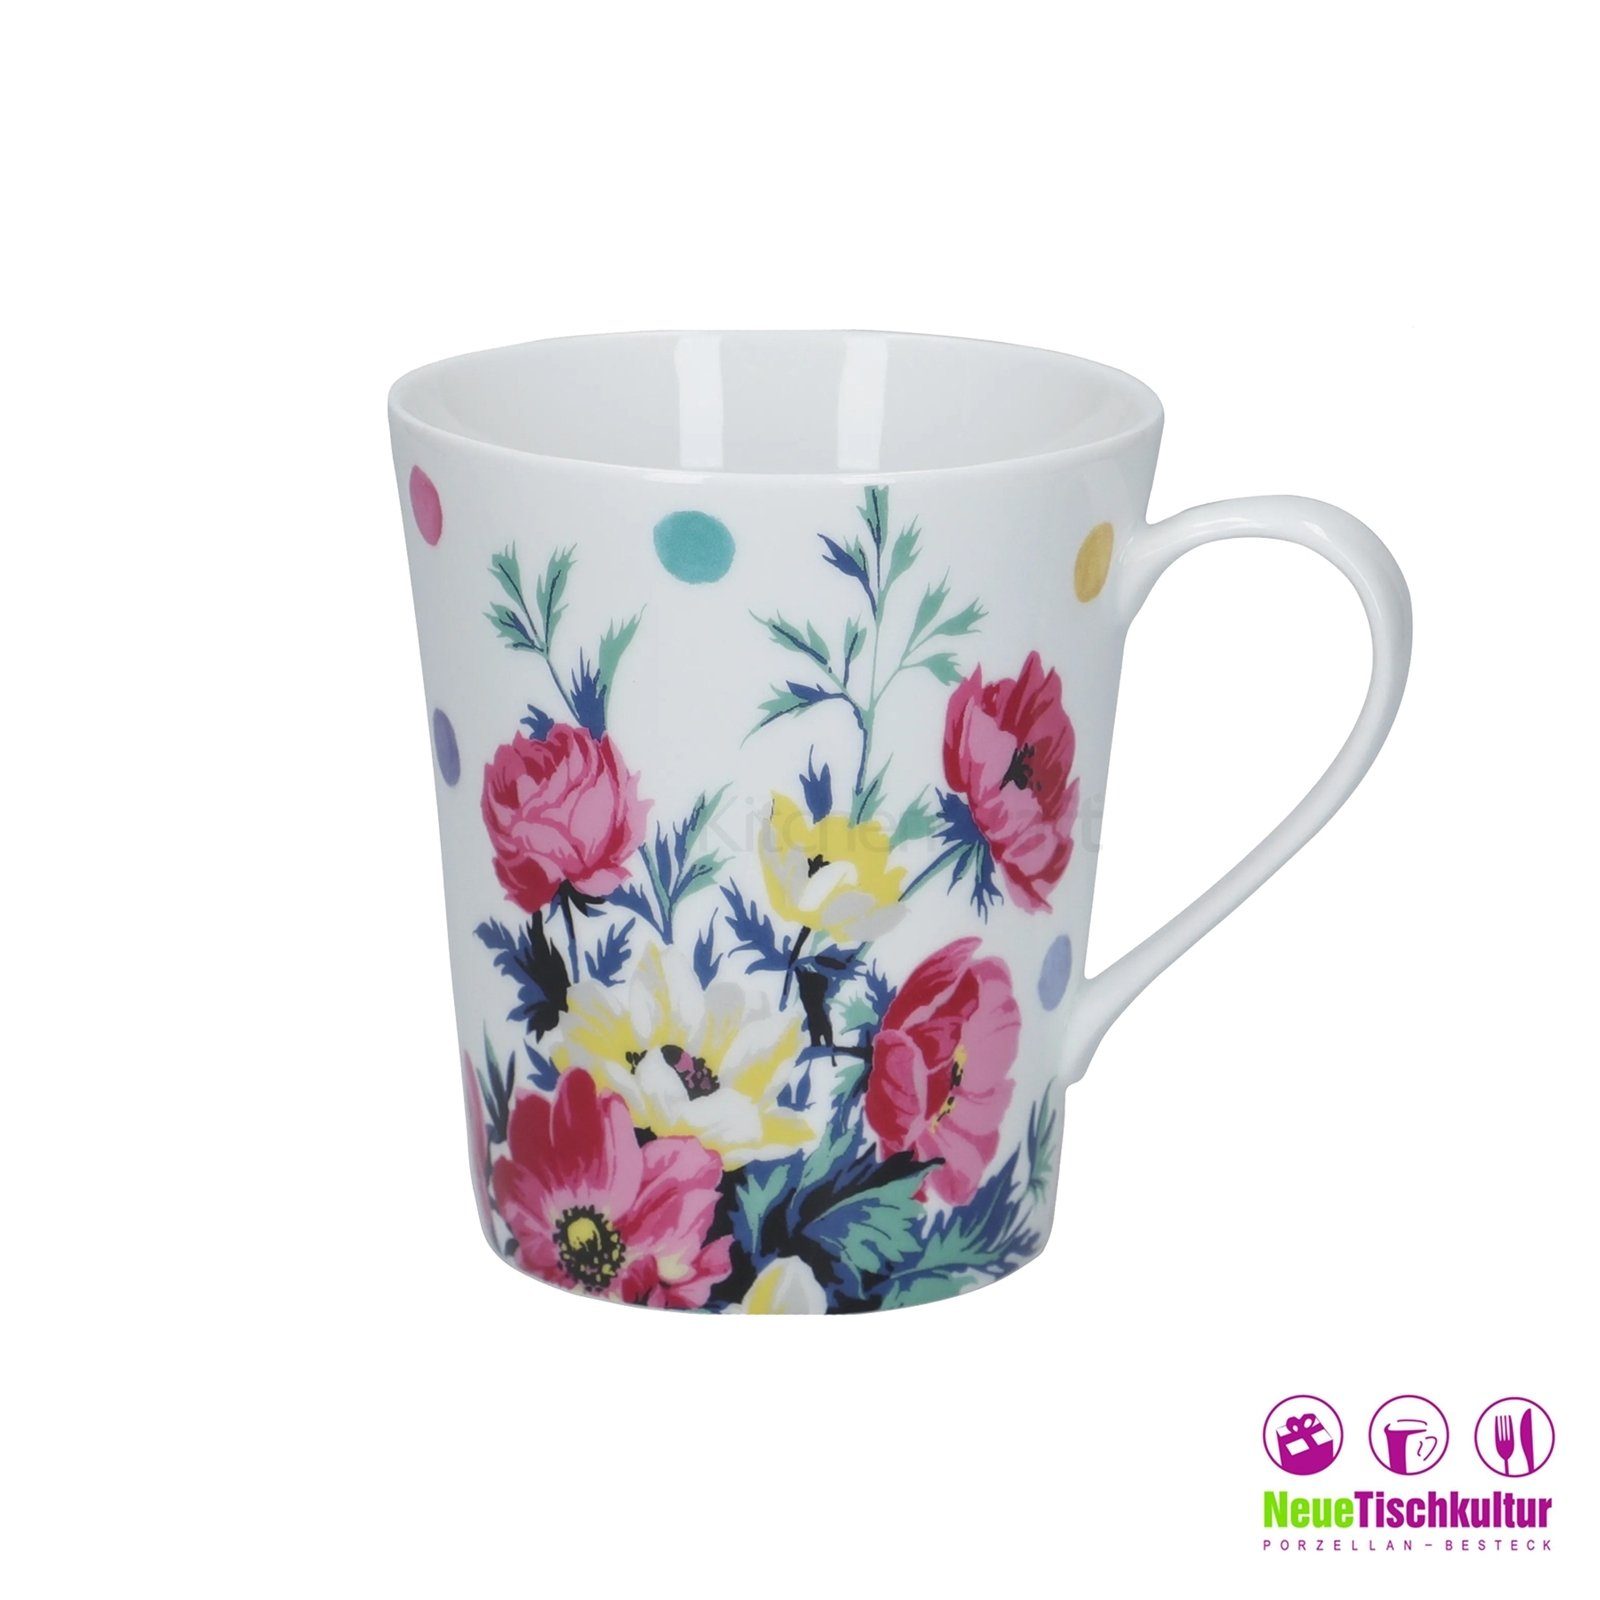 Neuetischkultur Mikasa, Blume Weiß Porzellan, Kaffeebecher Porzellan Bunt Kaffeetasse Tasse Blumendekor 4er-Set